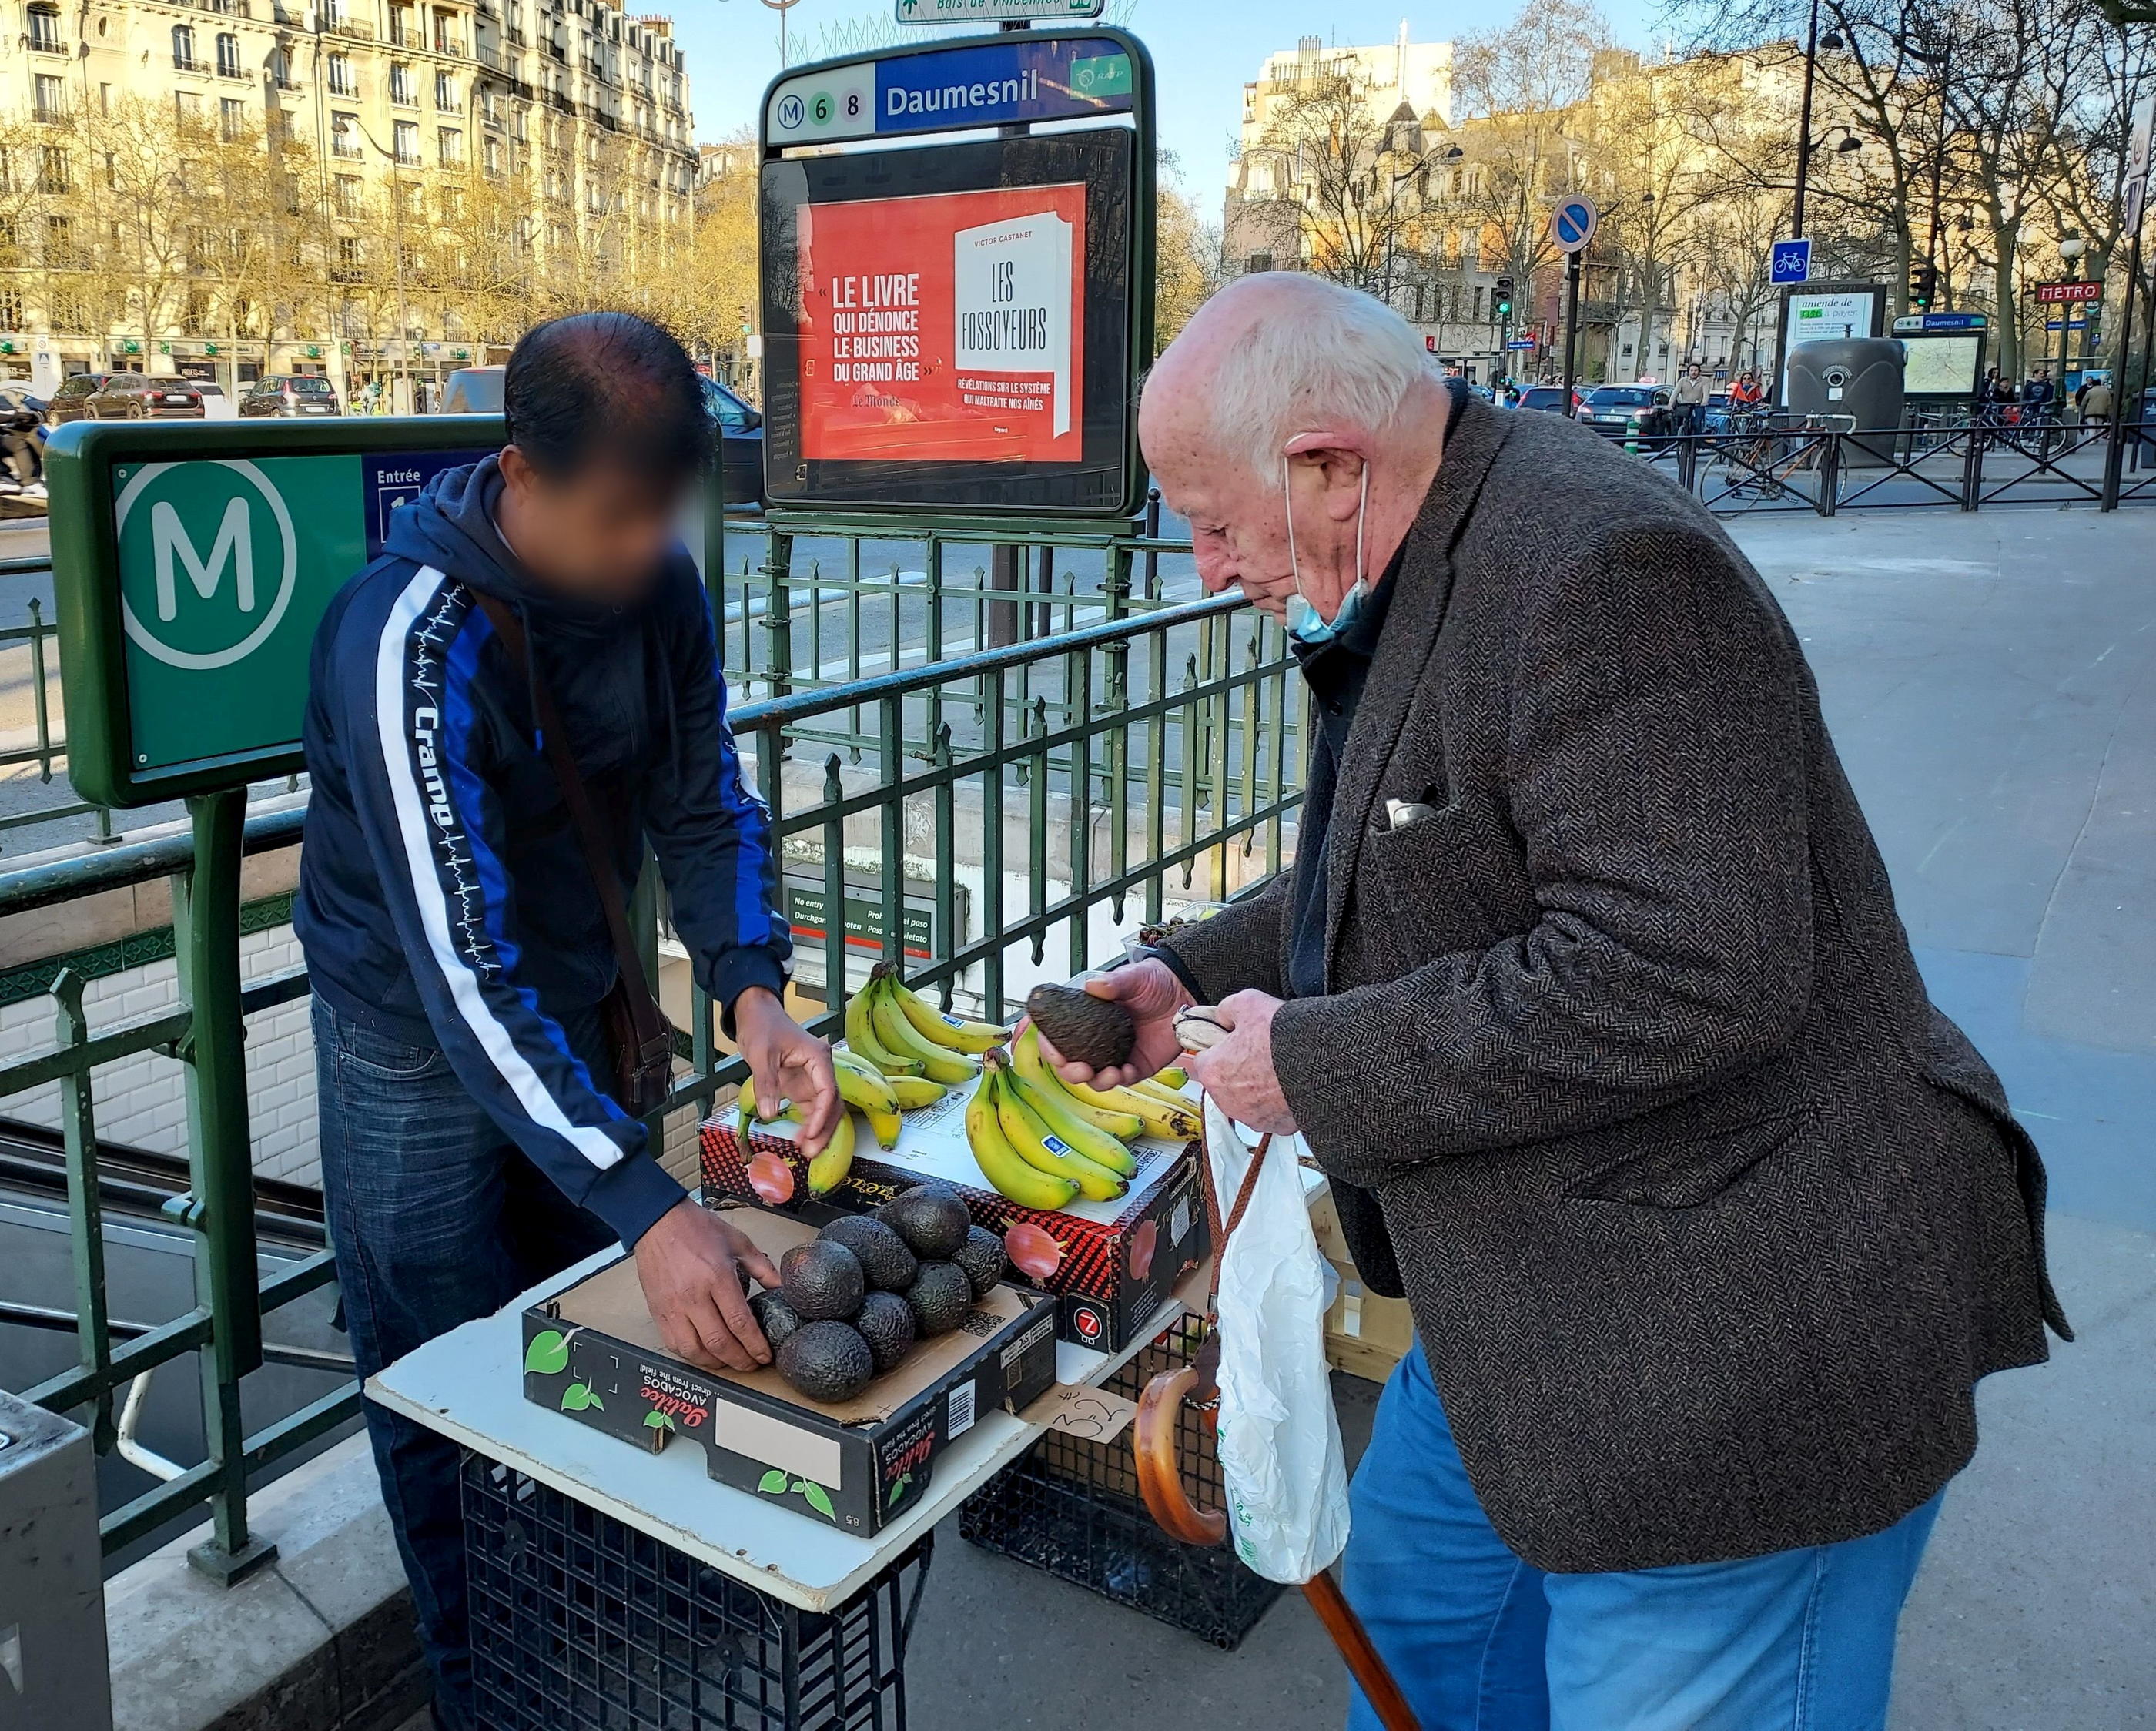 Daumesnil, Paris (XIIe). Hassan, marchand à la sauvette, est arrivé du Bangladesh. Il gagne 20 euros par jour en vendant des fruits et légumes illégalement. LP/Céline Carez